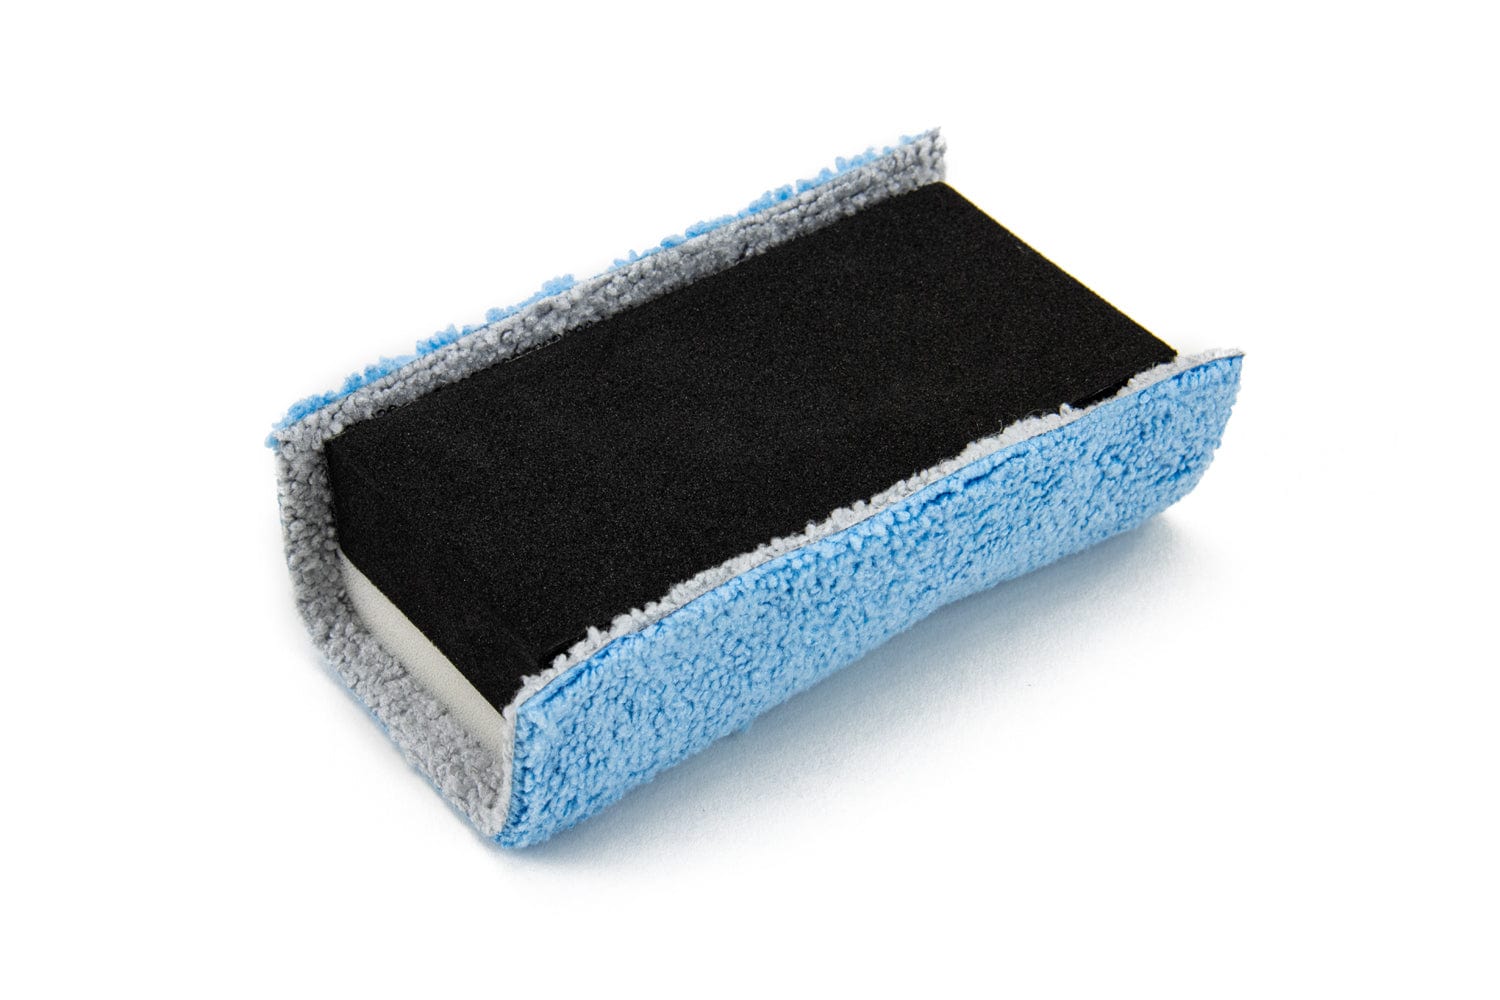 Ceramicgarage Microfiber Block Sponge Applicator Pad Regular Size